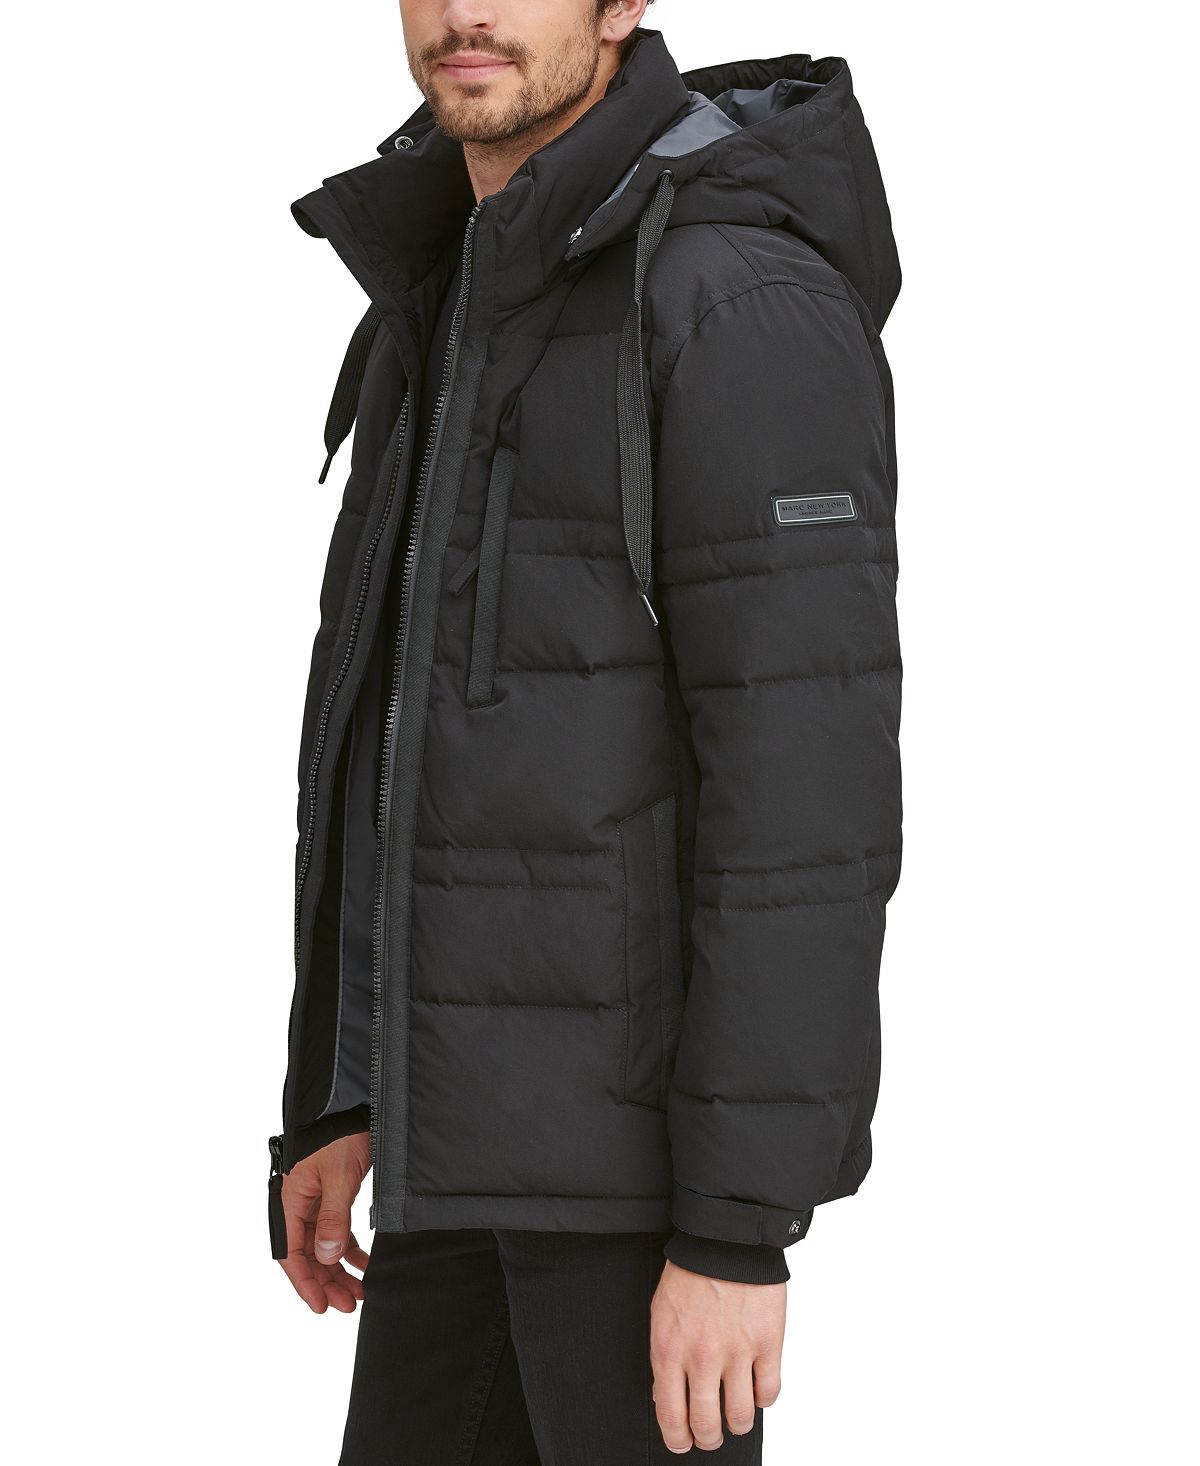 jacket rivaldi куртки с капюшоном Мужская мятая пуховая куртка huxley со съемным капюшоном Marc New York, черный